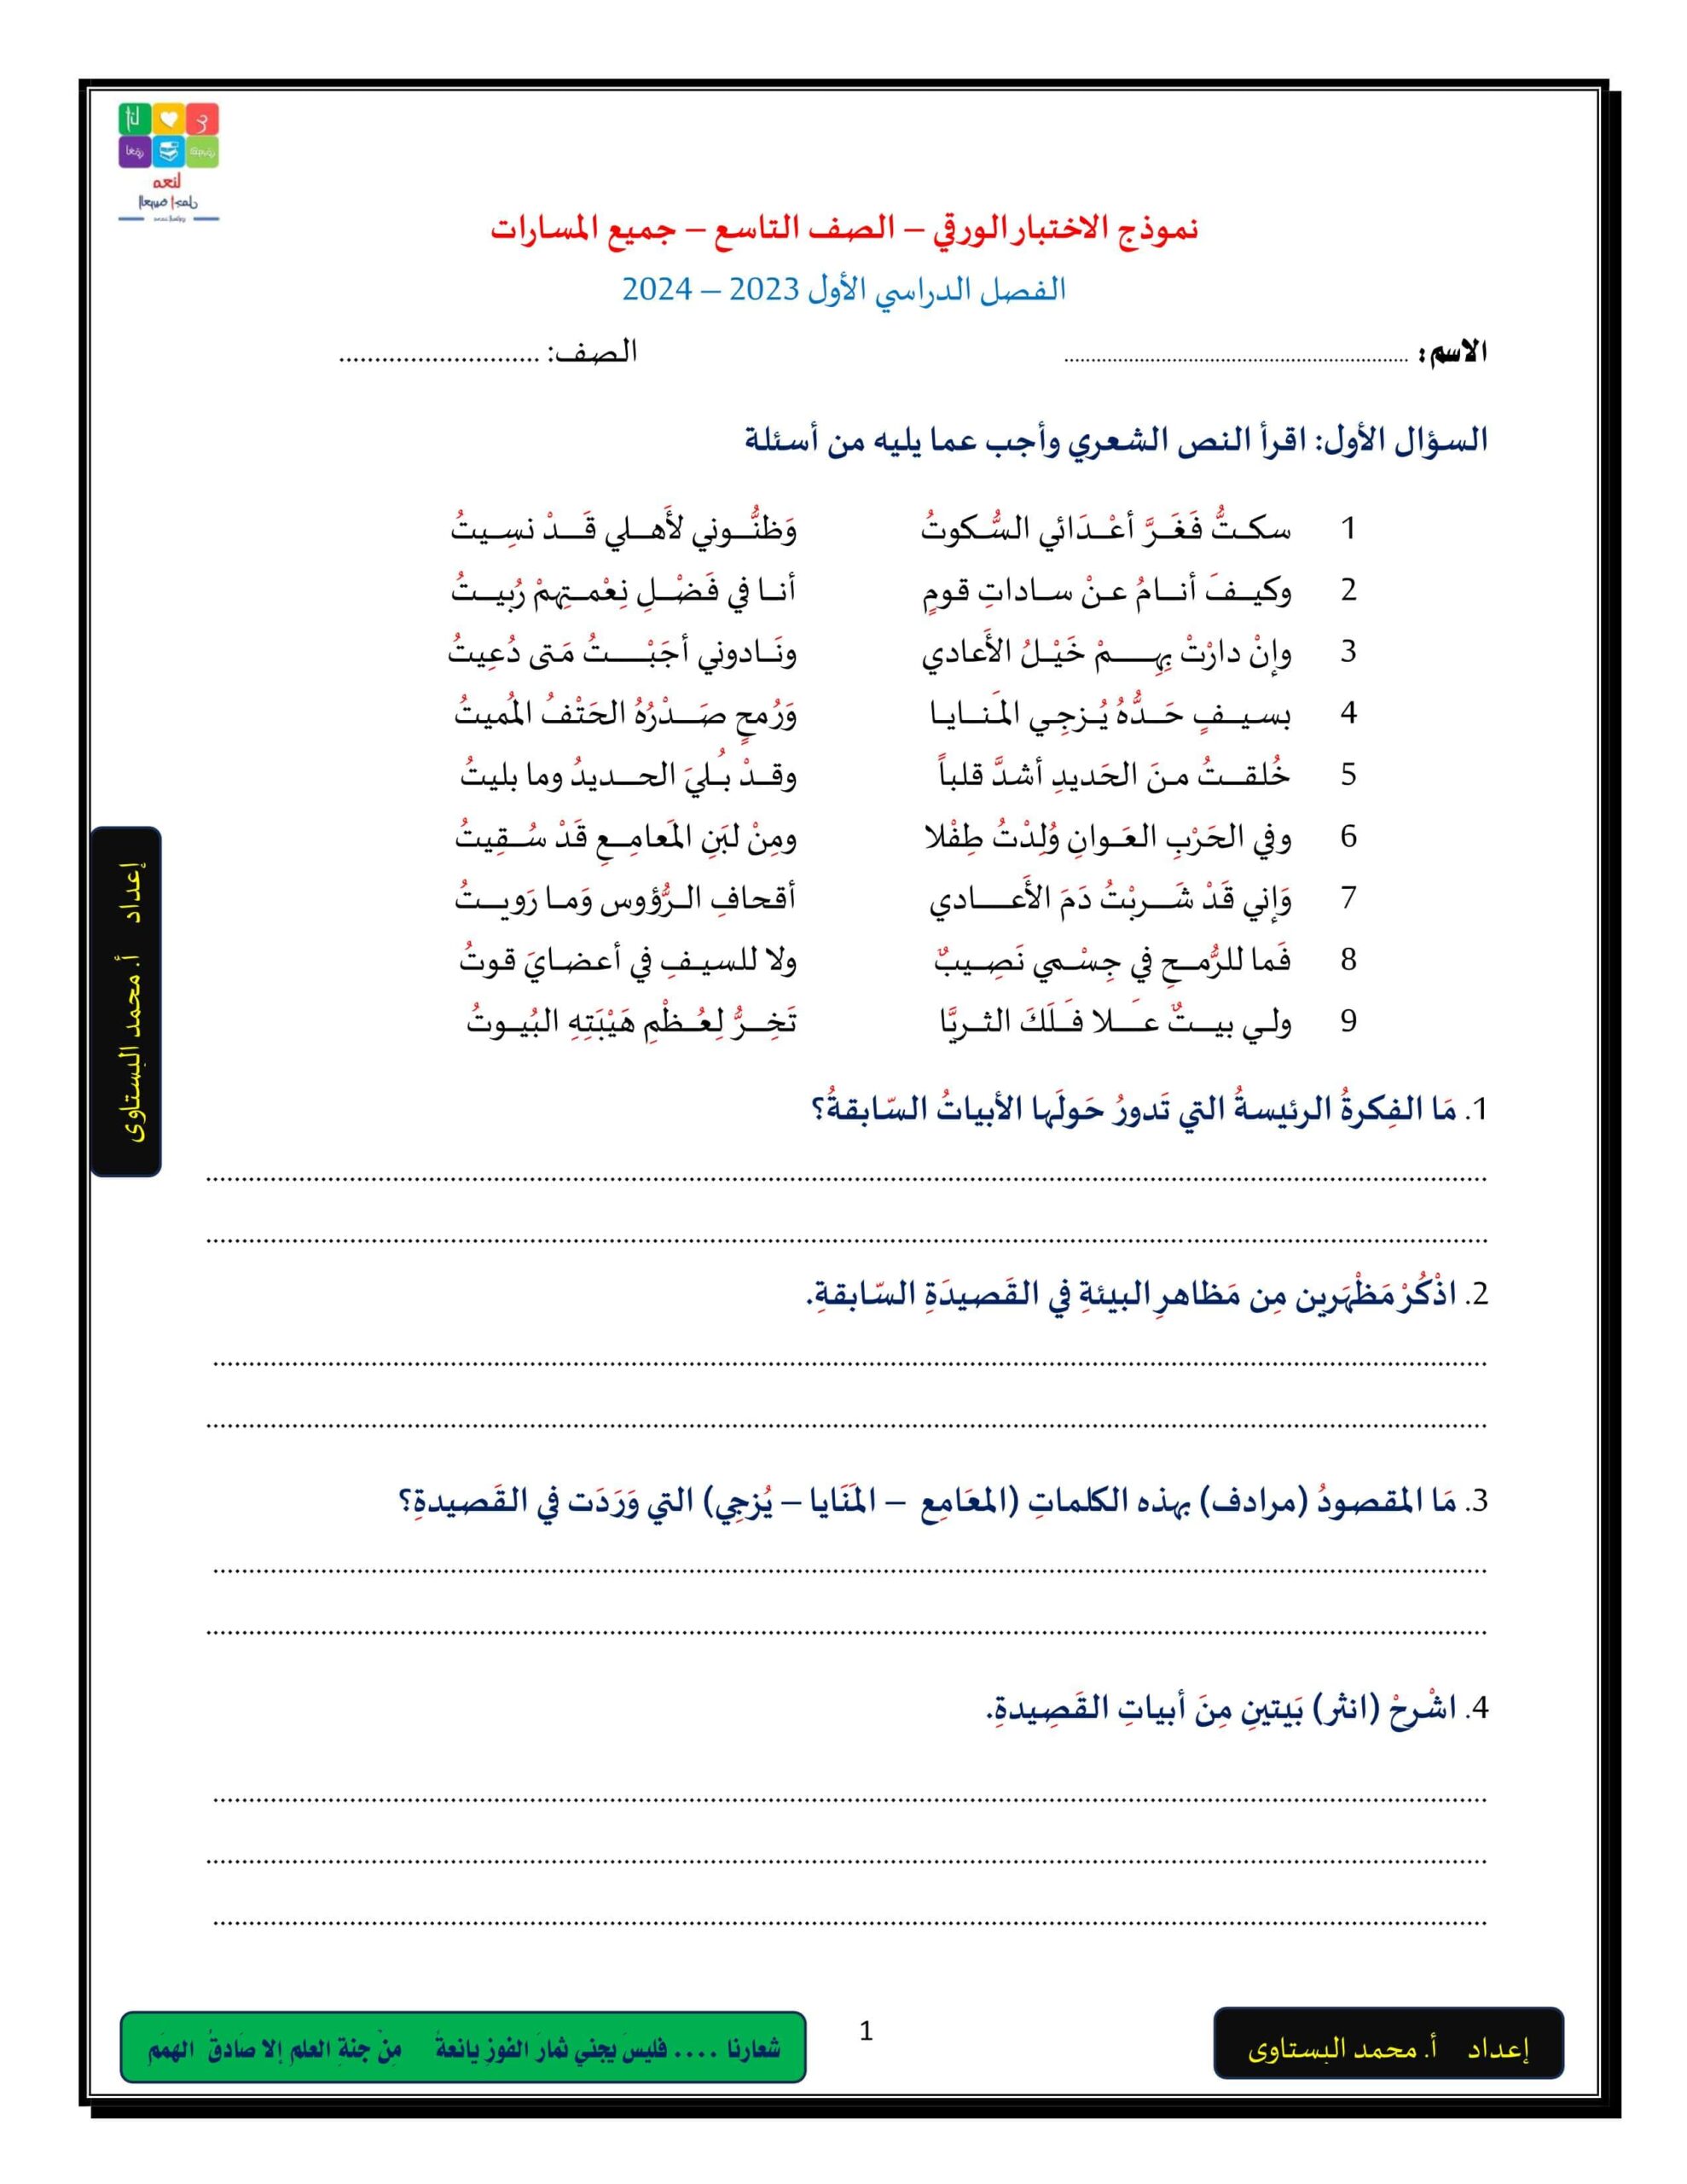 نموذج الاختبار الورقي اللغة العربية الصف التاسع 